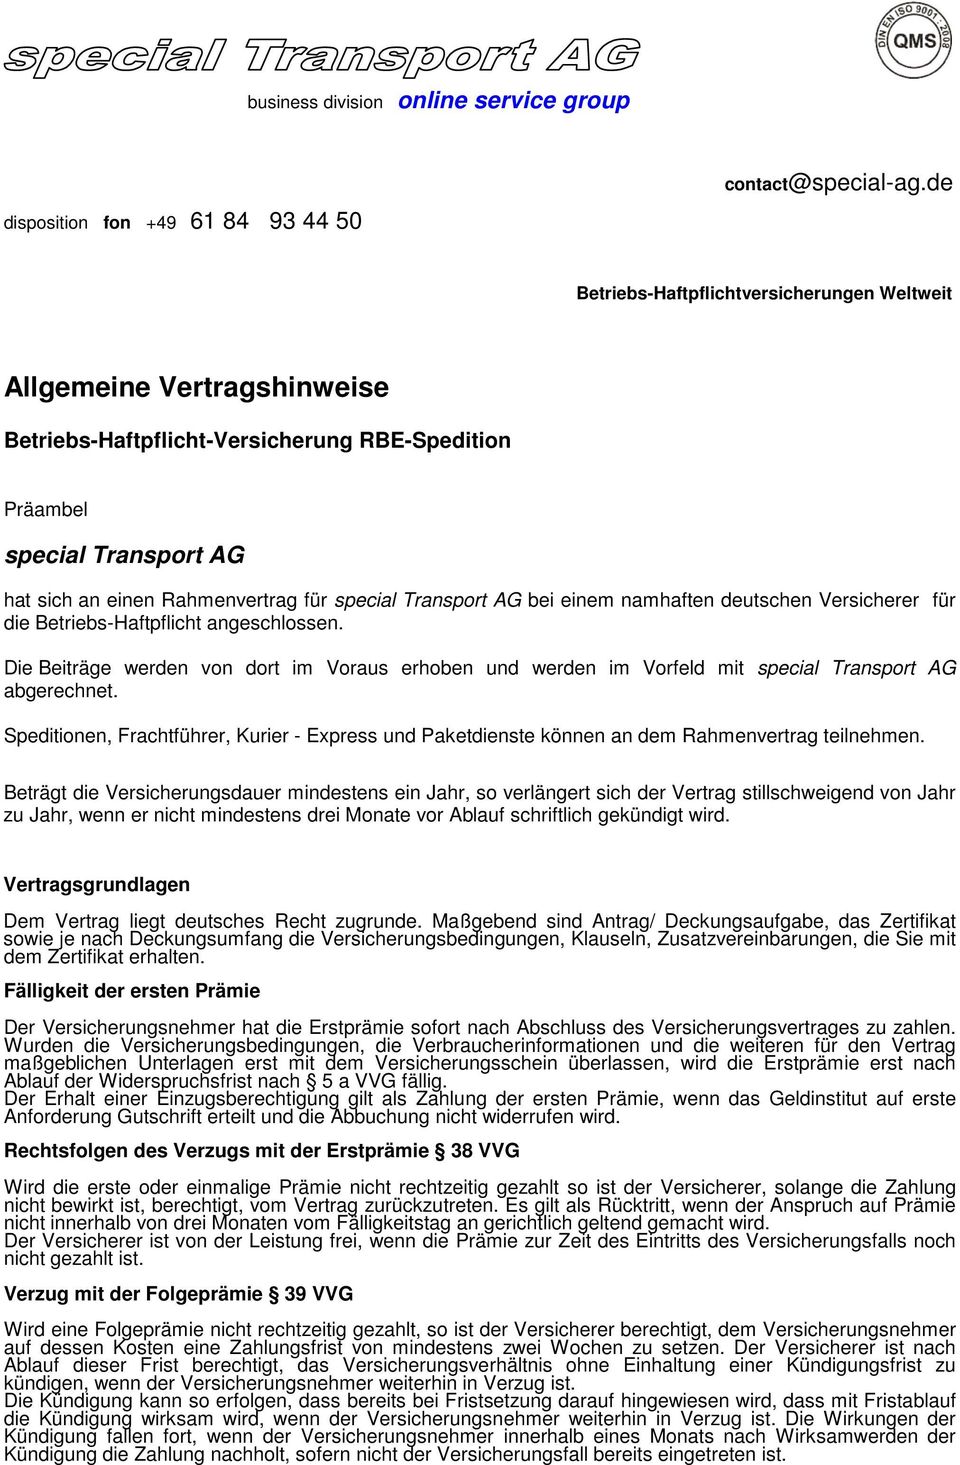 Transport AG bei einem namhaften deutschen Versicherer für die Betriebs-Haftpflicht angeschlossen.